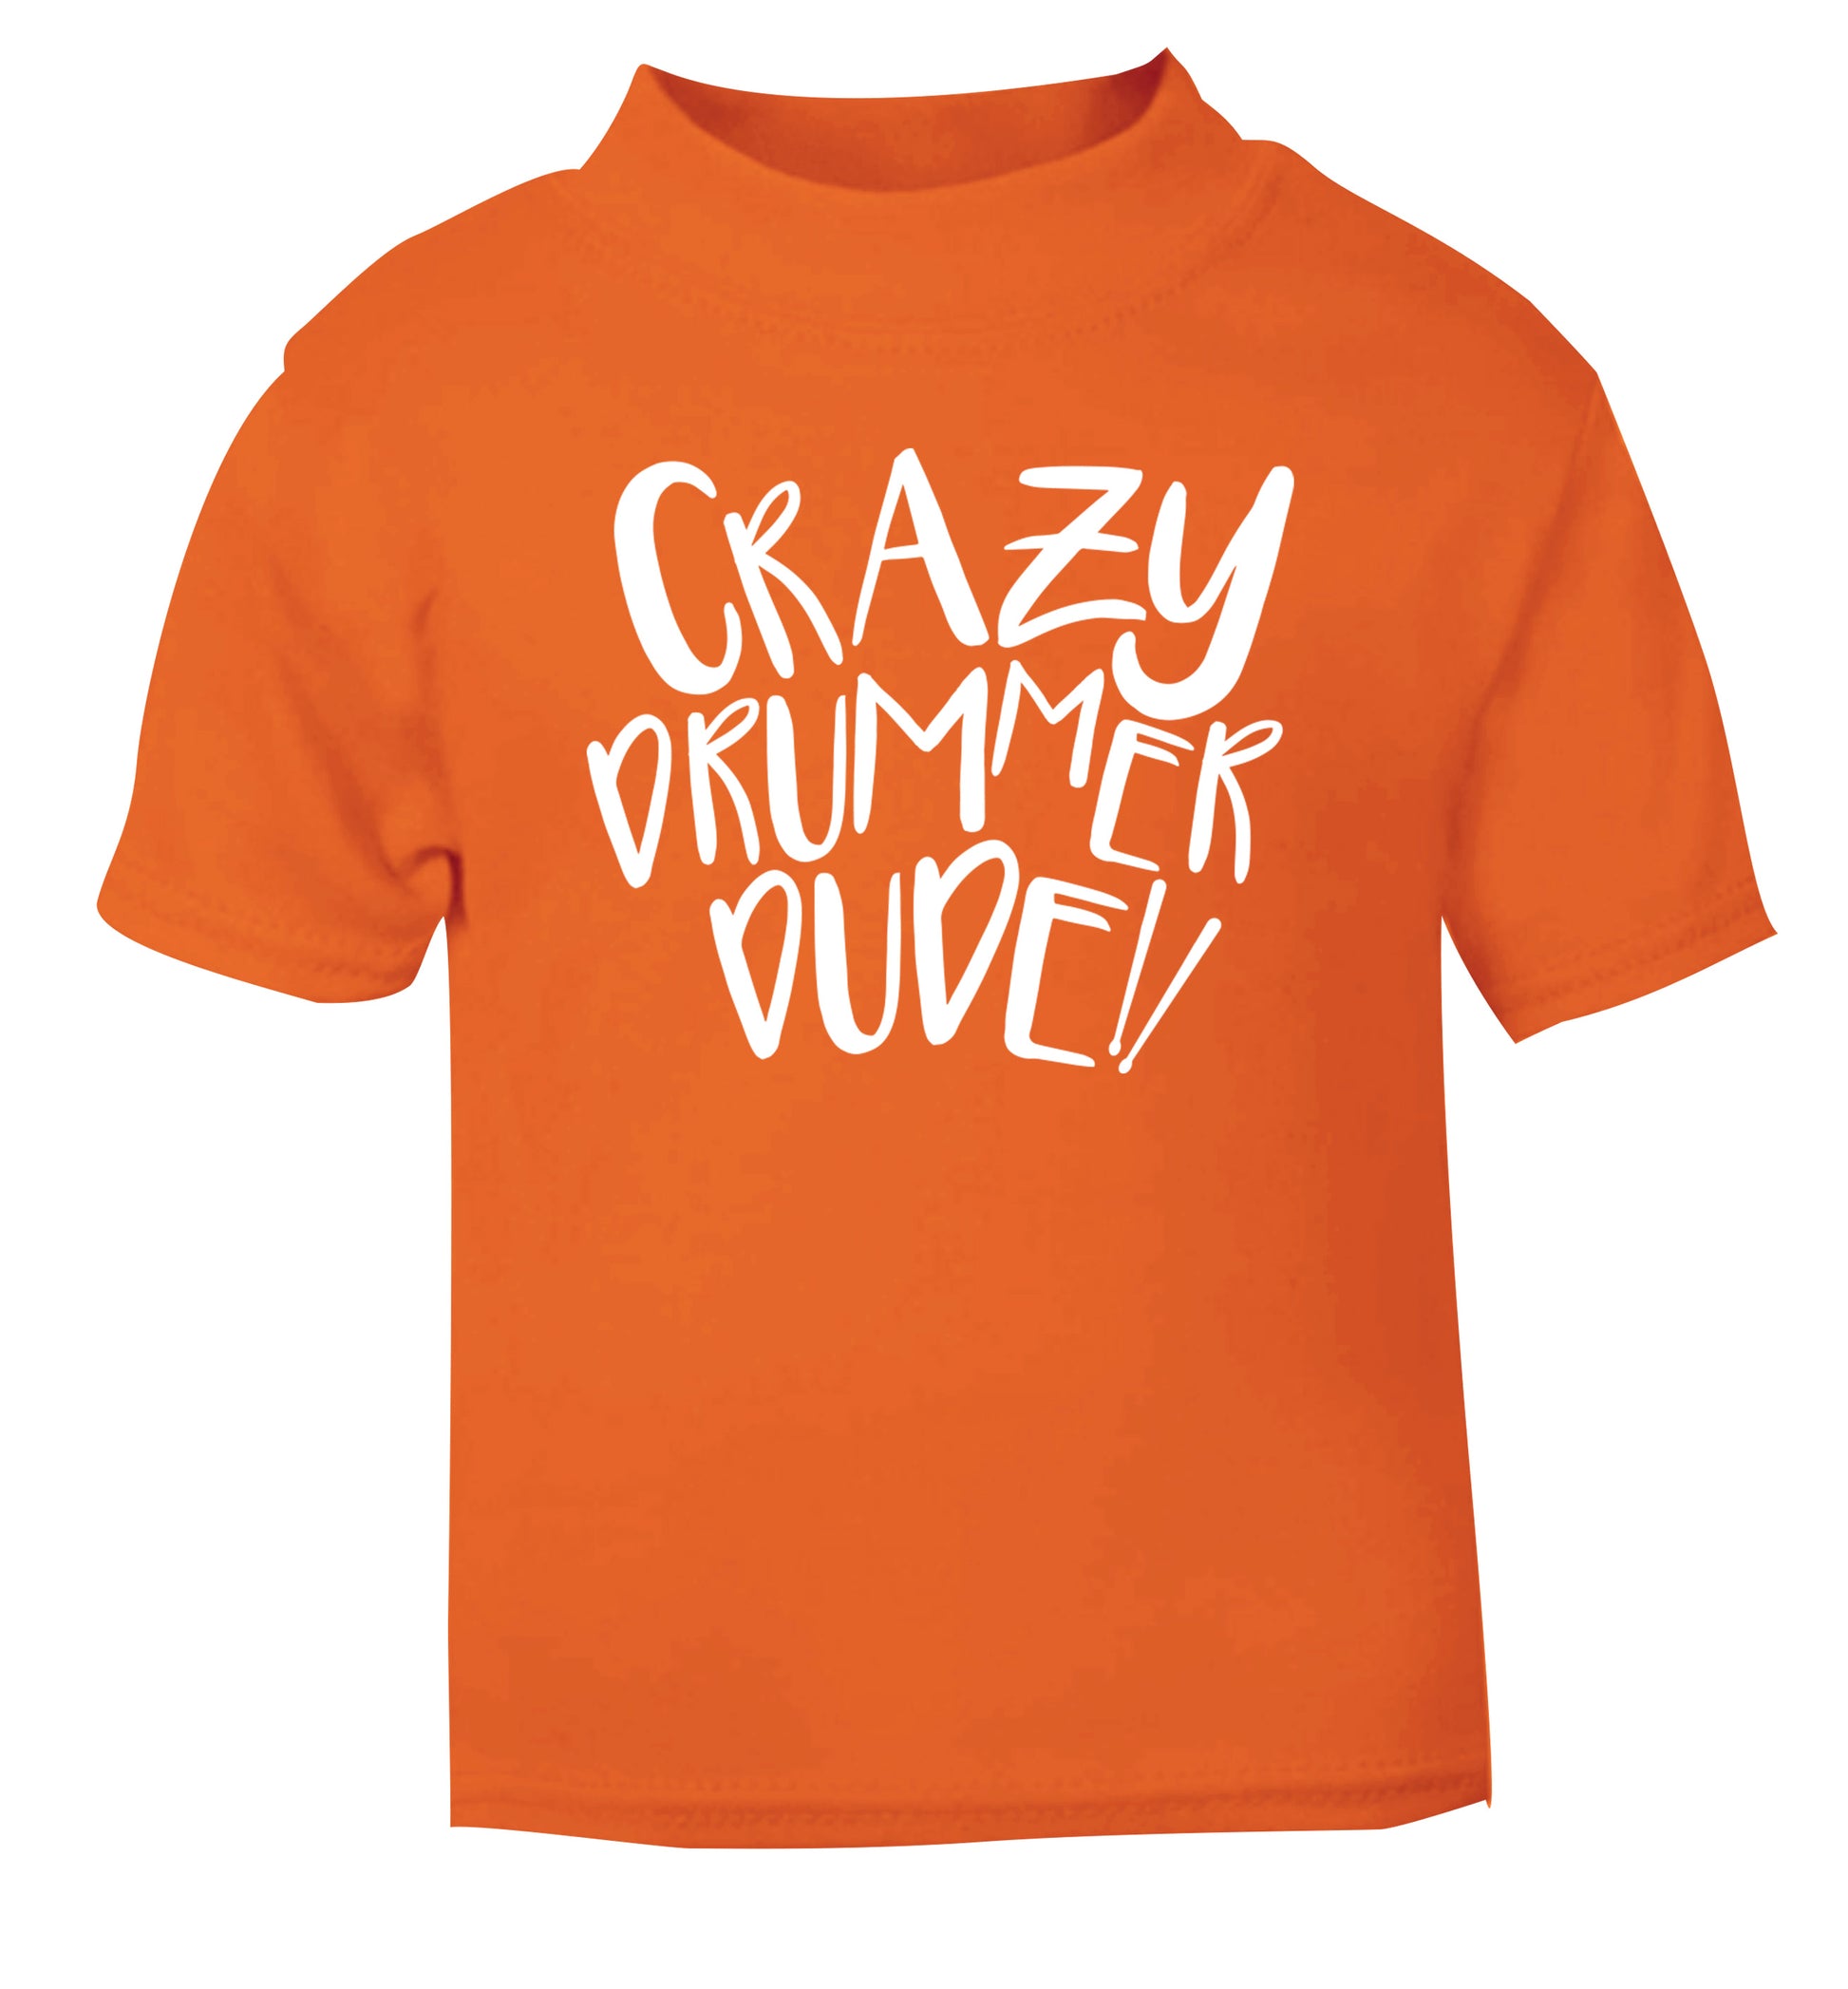 Crazy drummer dude orange Baby Toddler Tshirt 2 Years